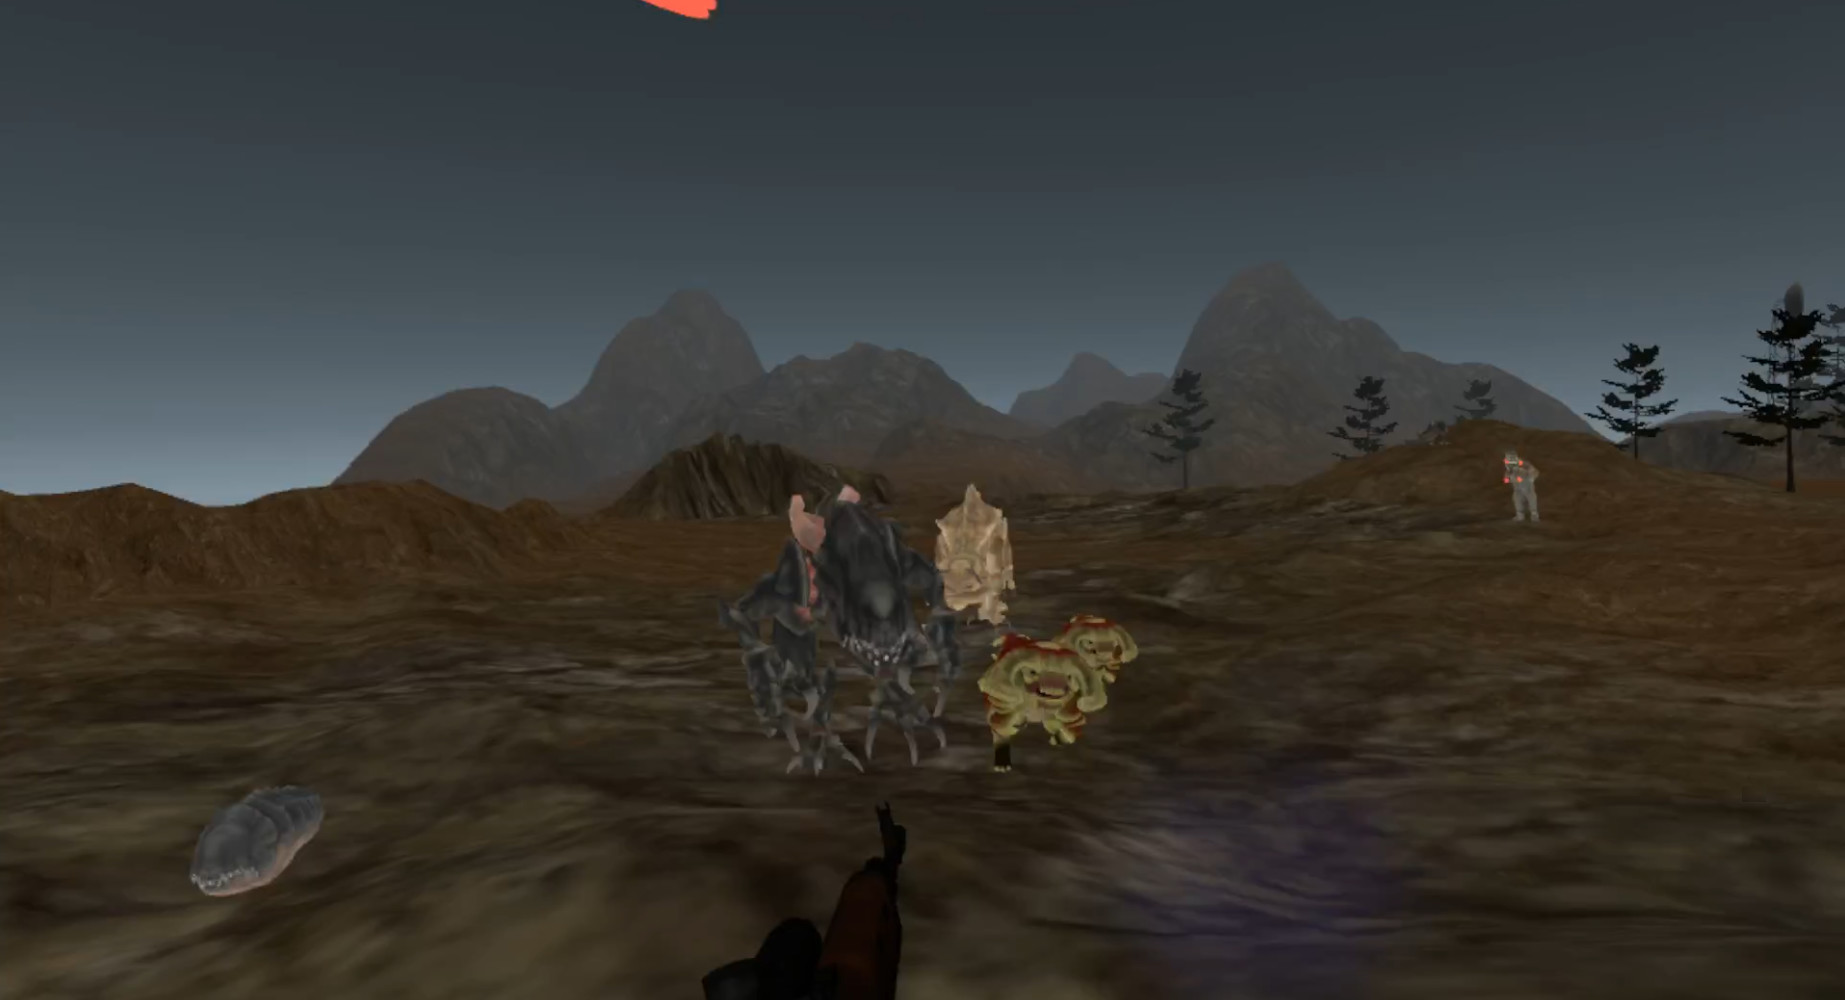 Alien Defense Unit screenshot